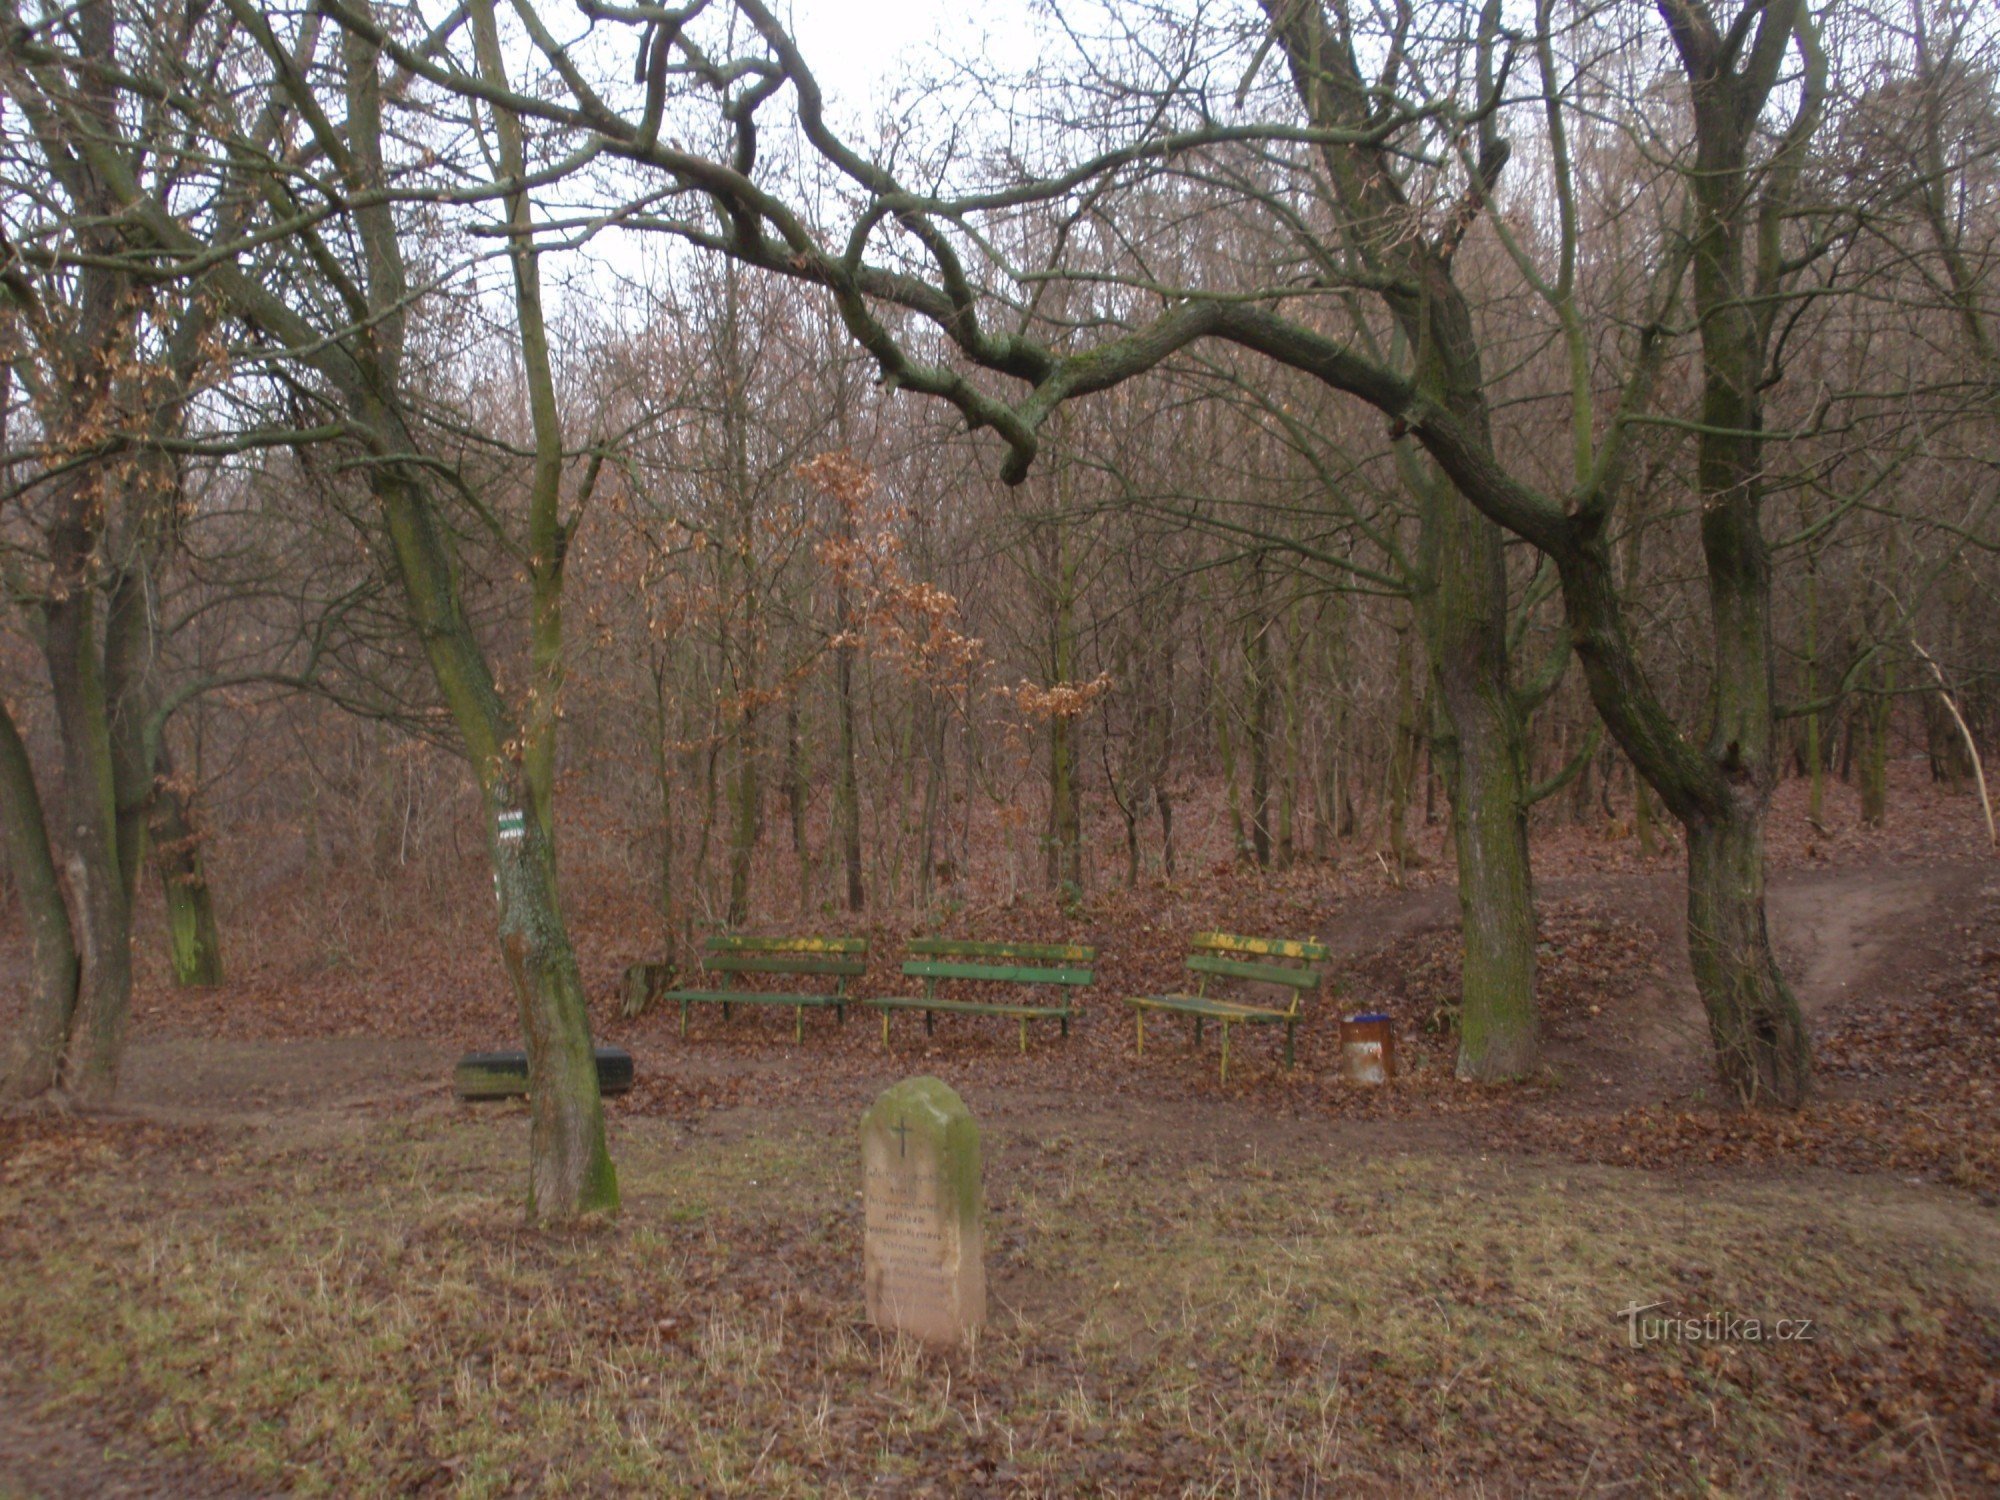 Egy ősi gyilkosság emlékműve Padocov közelében